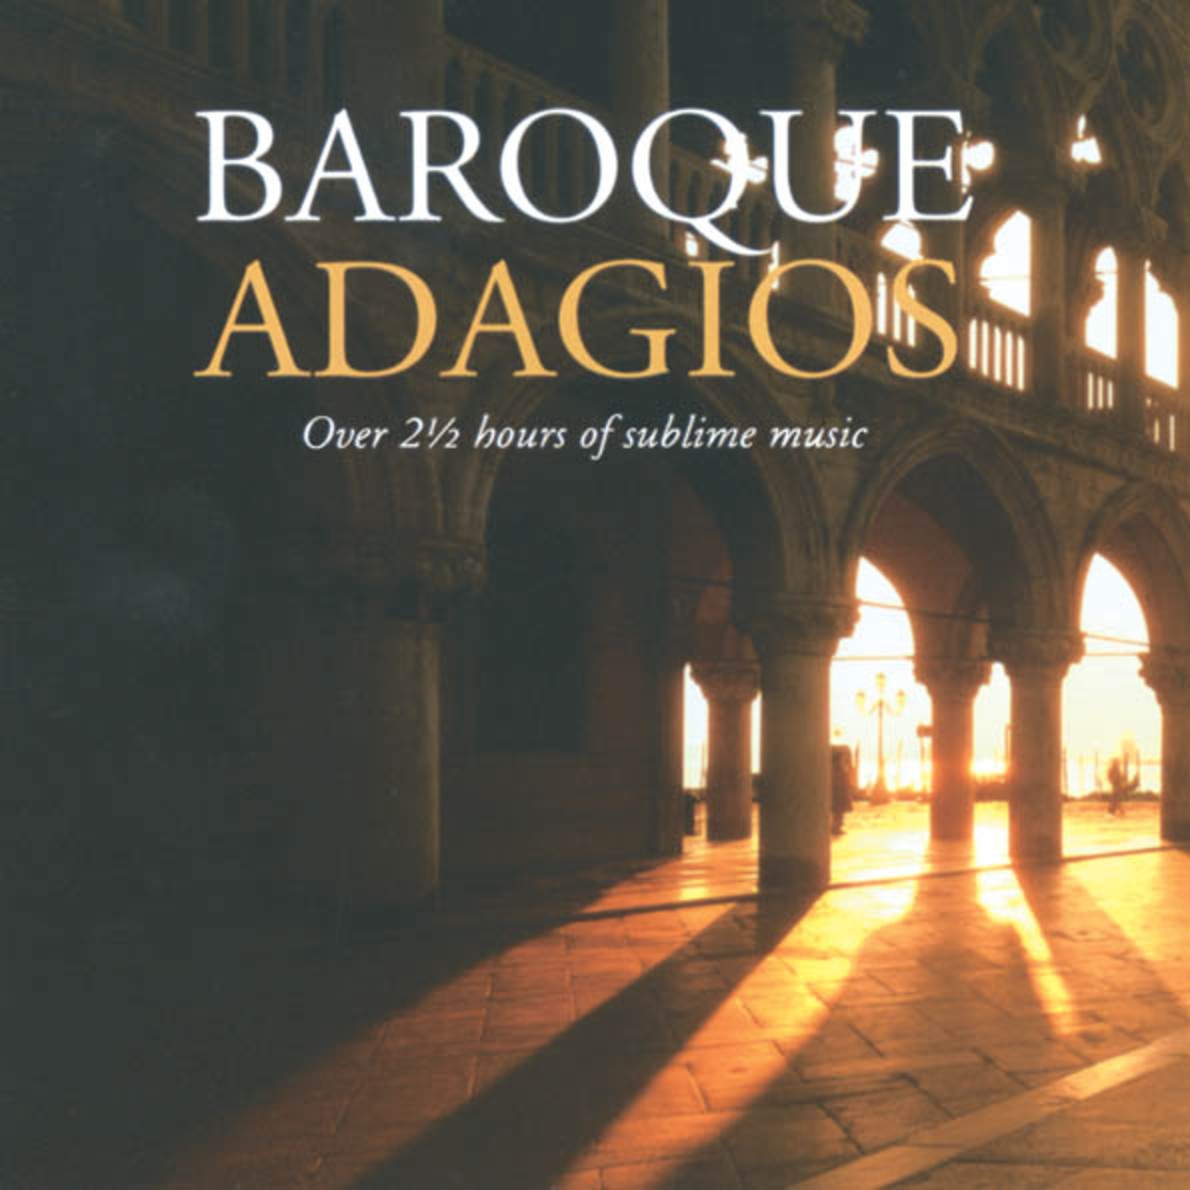 J.S. Bach: Arioso (Adagio in G) from Cantata BWV 156 (Arr. Lloyd Webber)